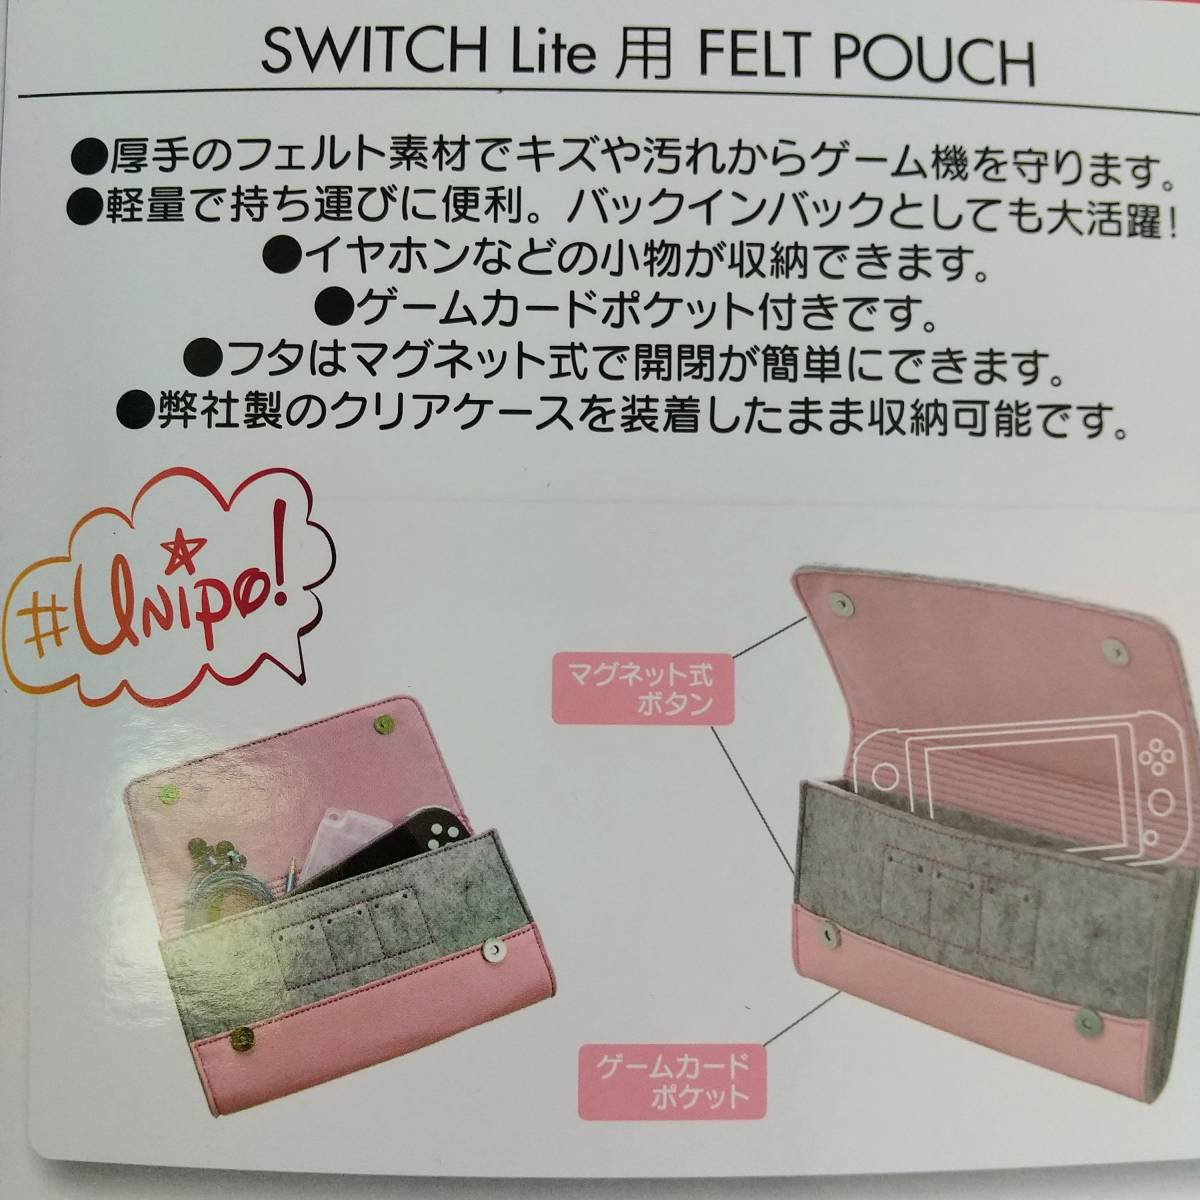 【未開封品】Nintendo Switch Lite 用 フェルトポーチ B08H1YZV9X/ALLONE(アローン)☆セール品